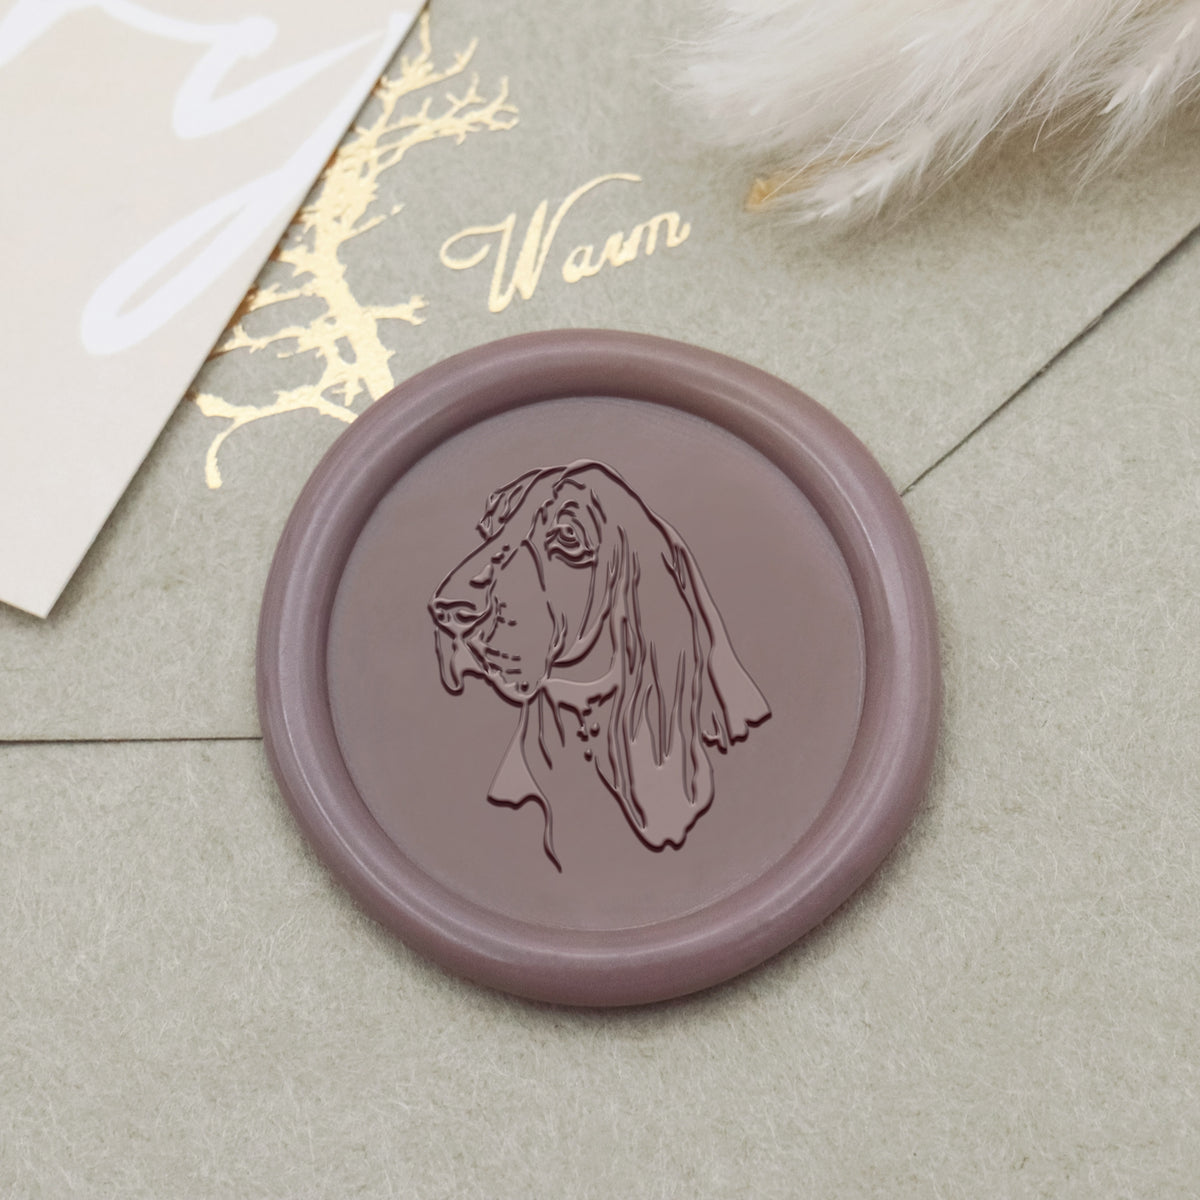 Basset Hound Dog Wax Seal Stamp - Stamprints1